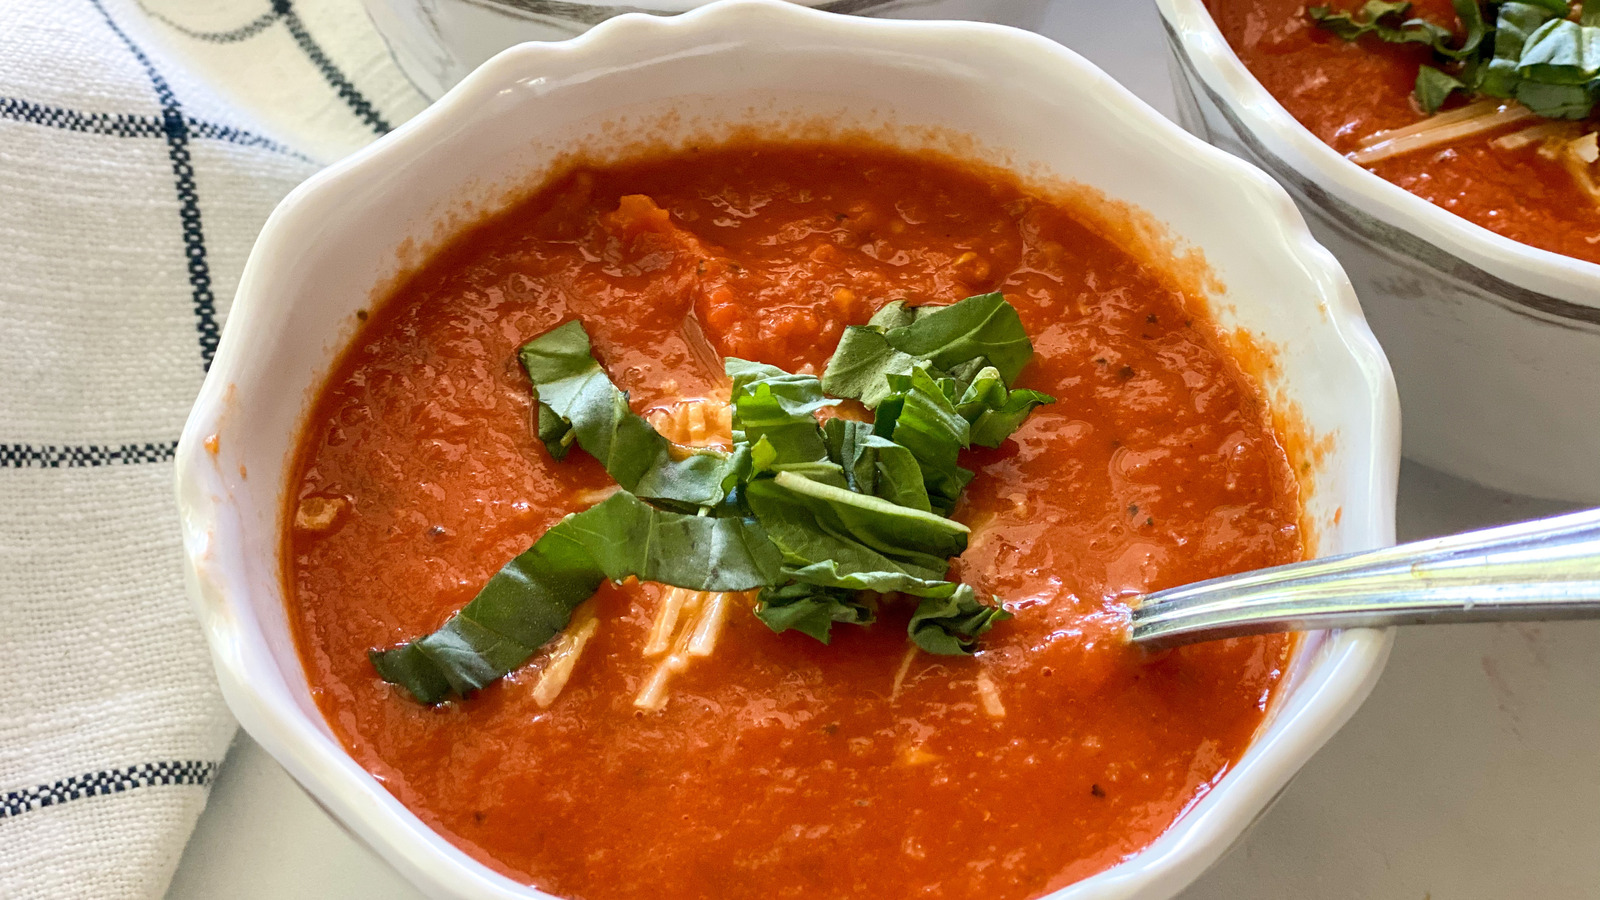 Panera Bread™ Tomato Soup Copycat Recipe Recipe - (4.1/5)